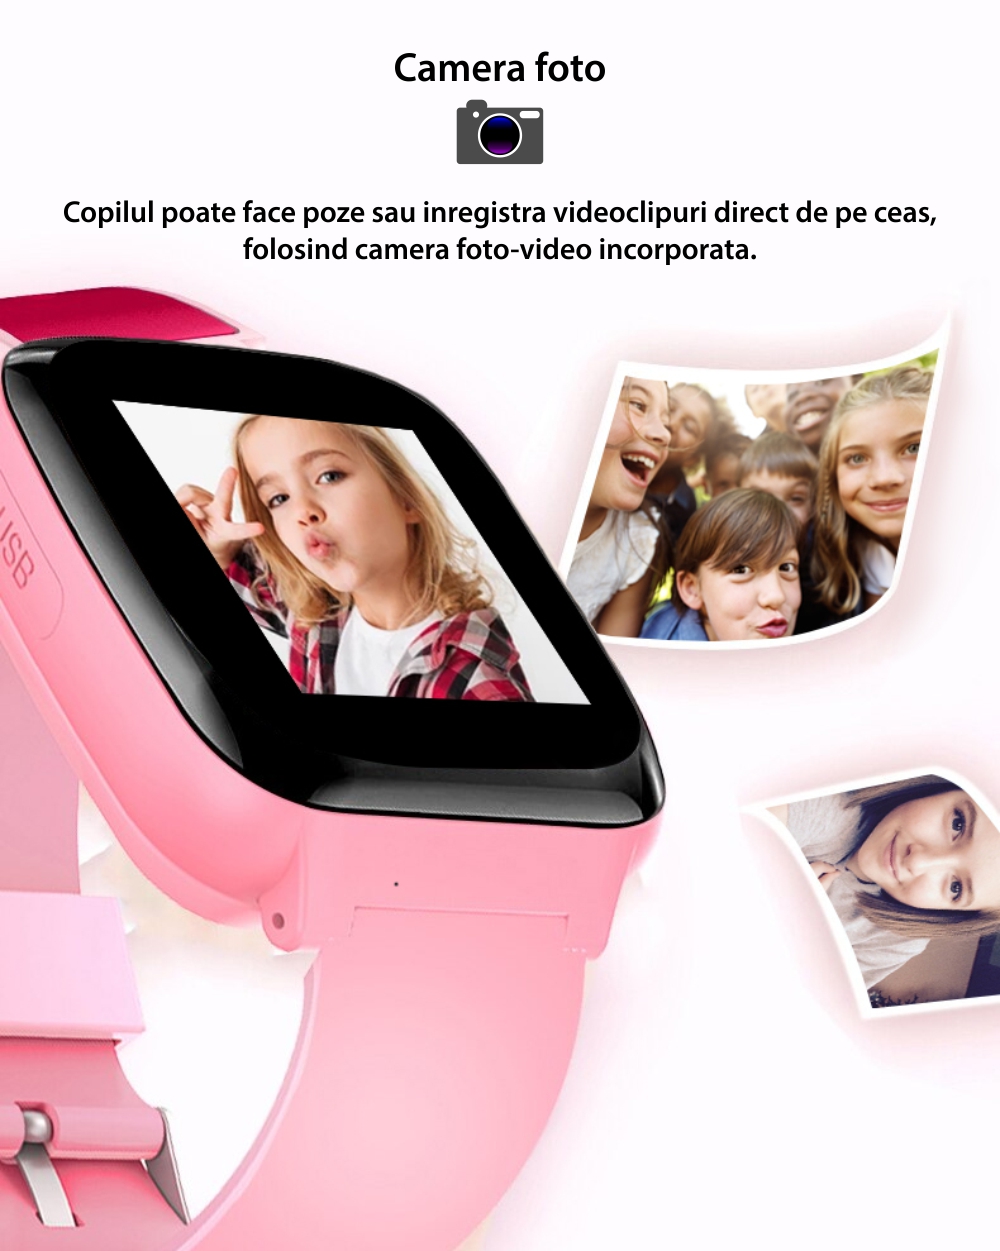 Ceas Smartwatch Pentru Copii YQT A7 cu Functie telefon, Istoric apeluri, Jocuri, Alarma, Contacte, Roz